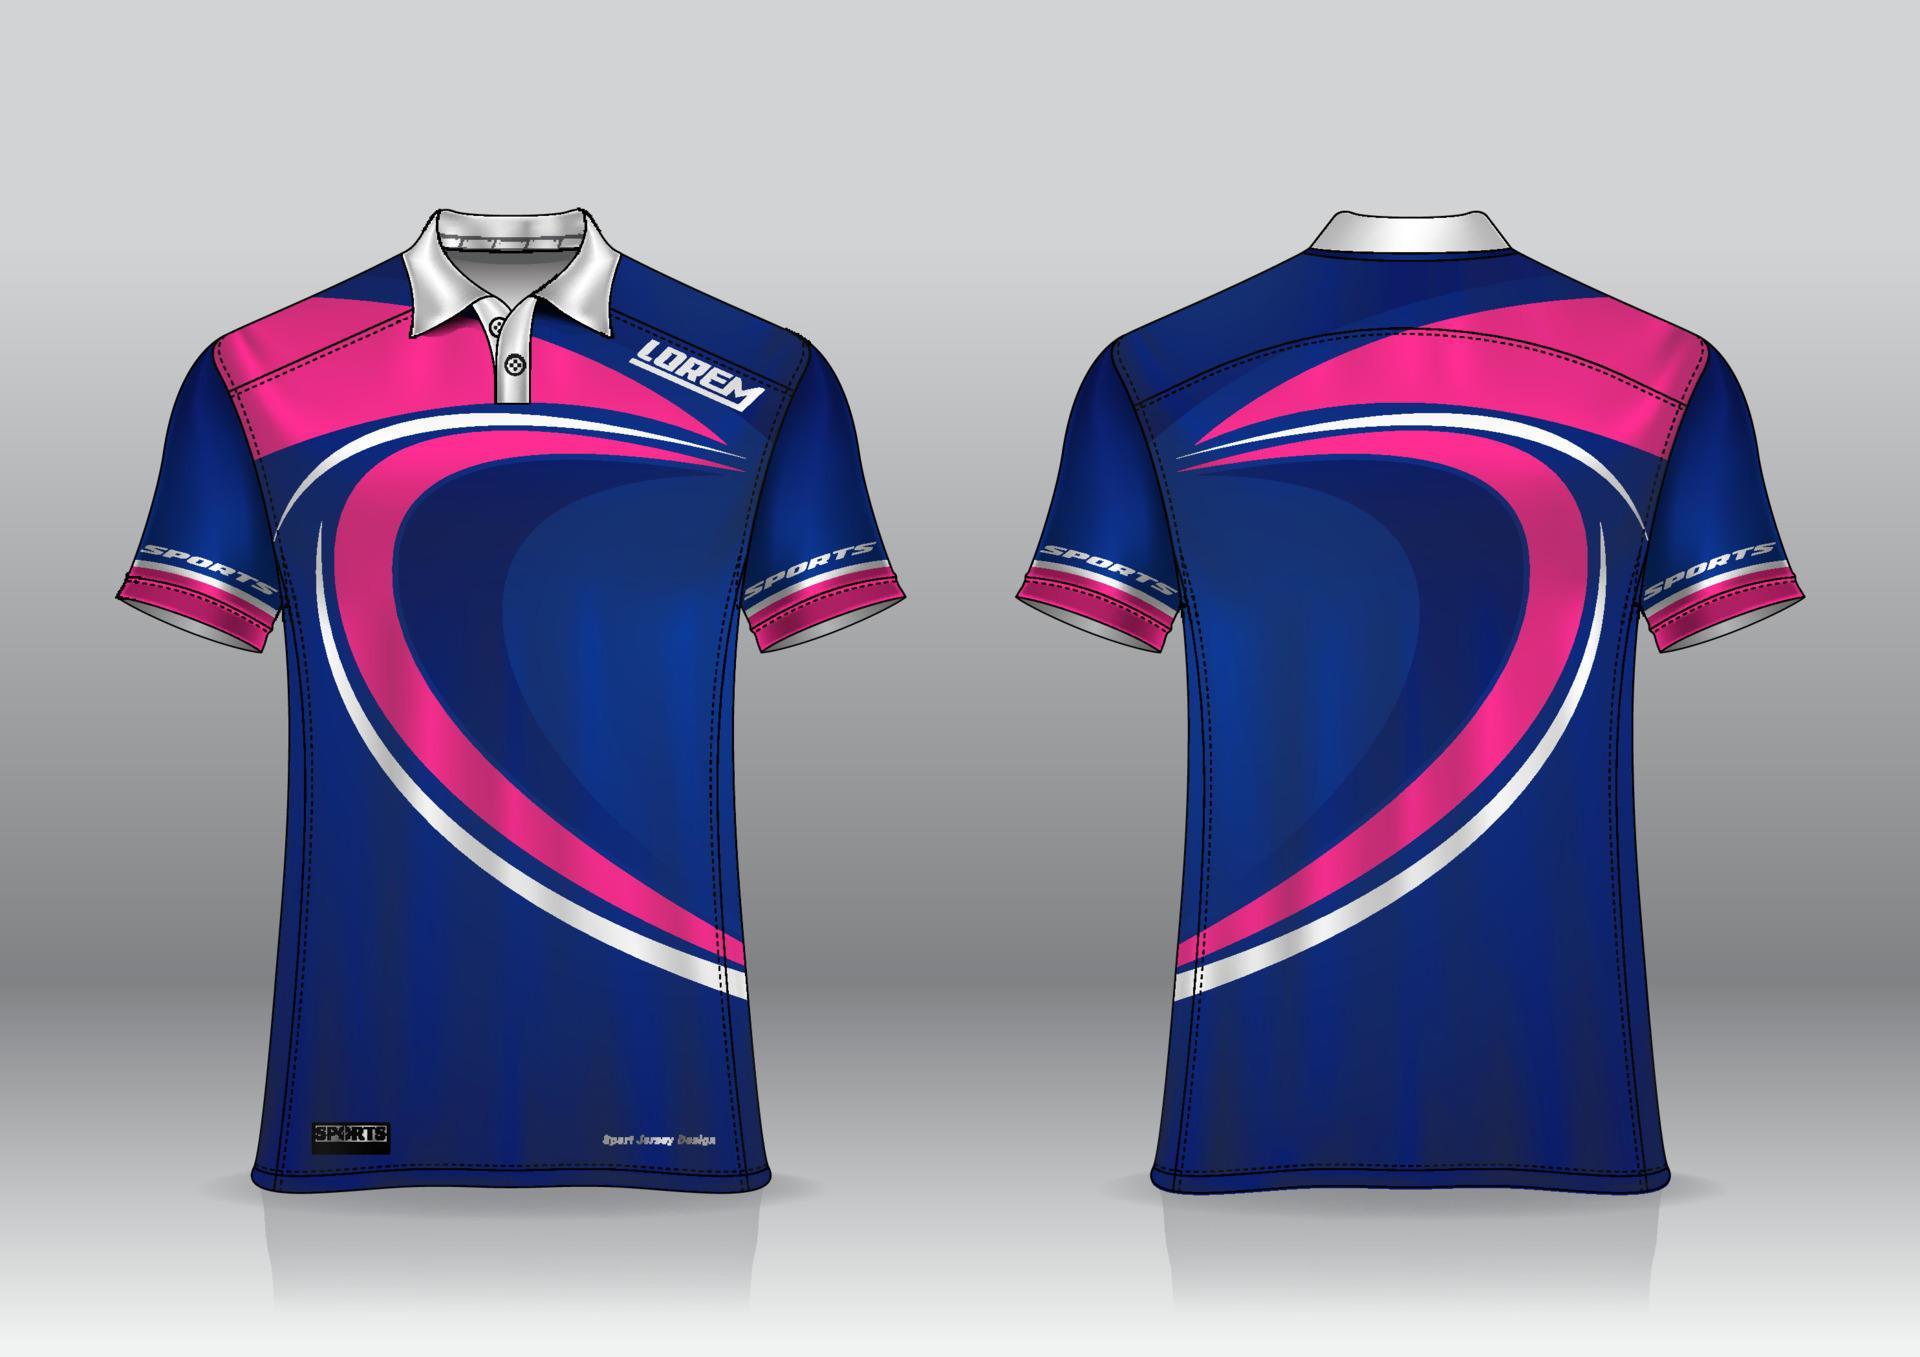 polo shirt uniform design for outdoor sports 8028465 Vector Art at Vecteezy